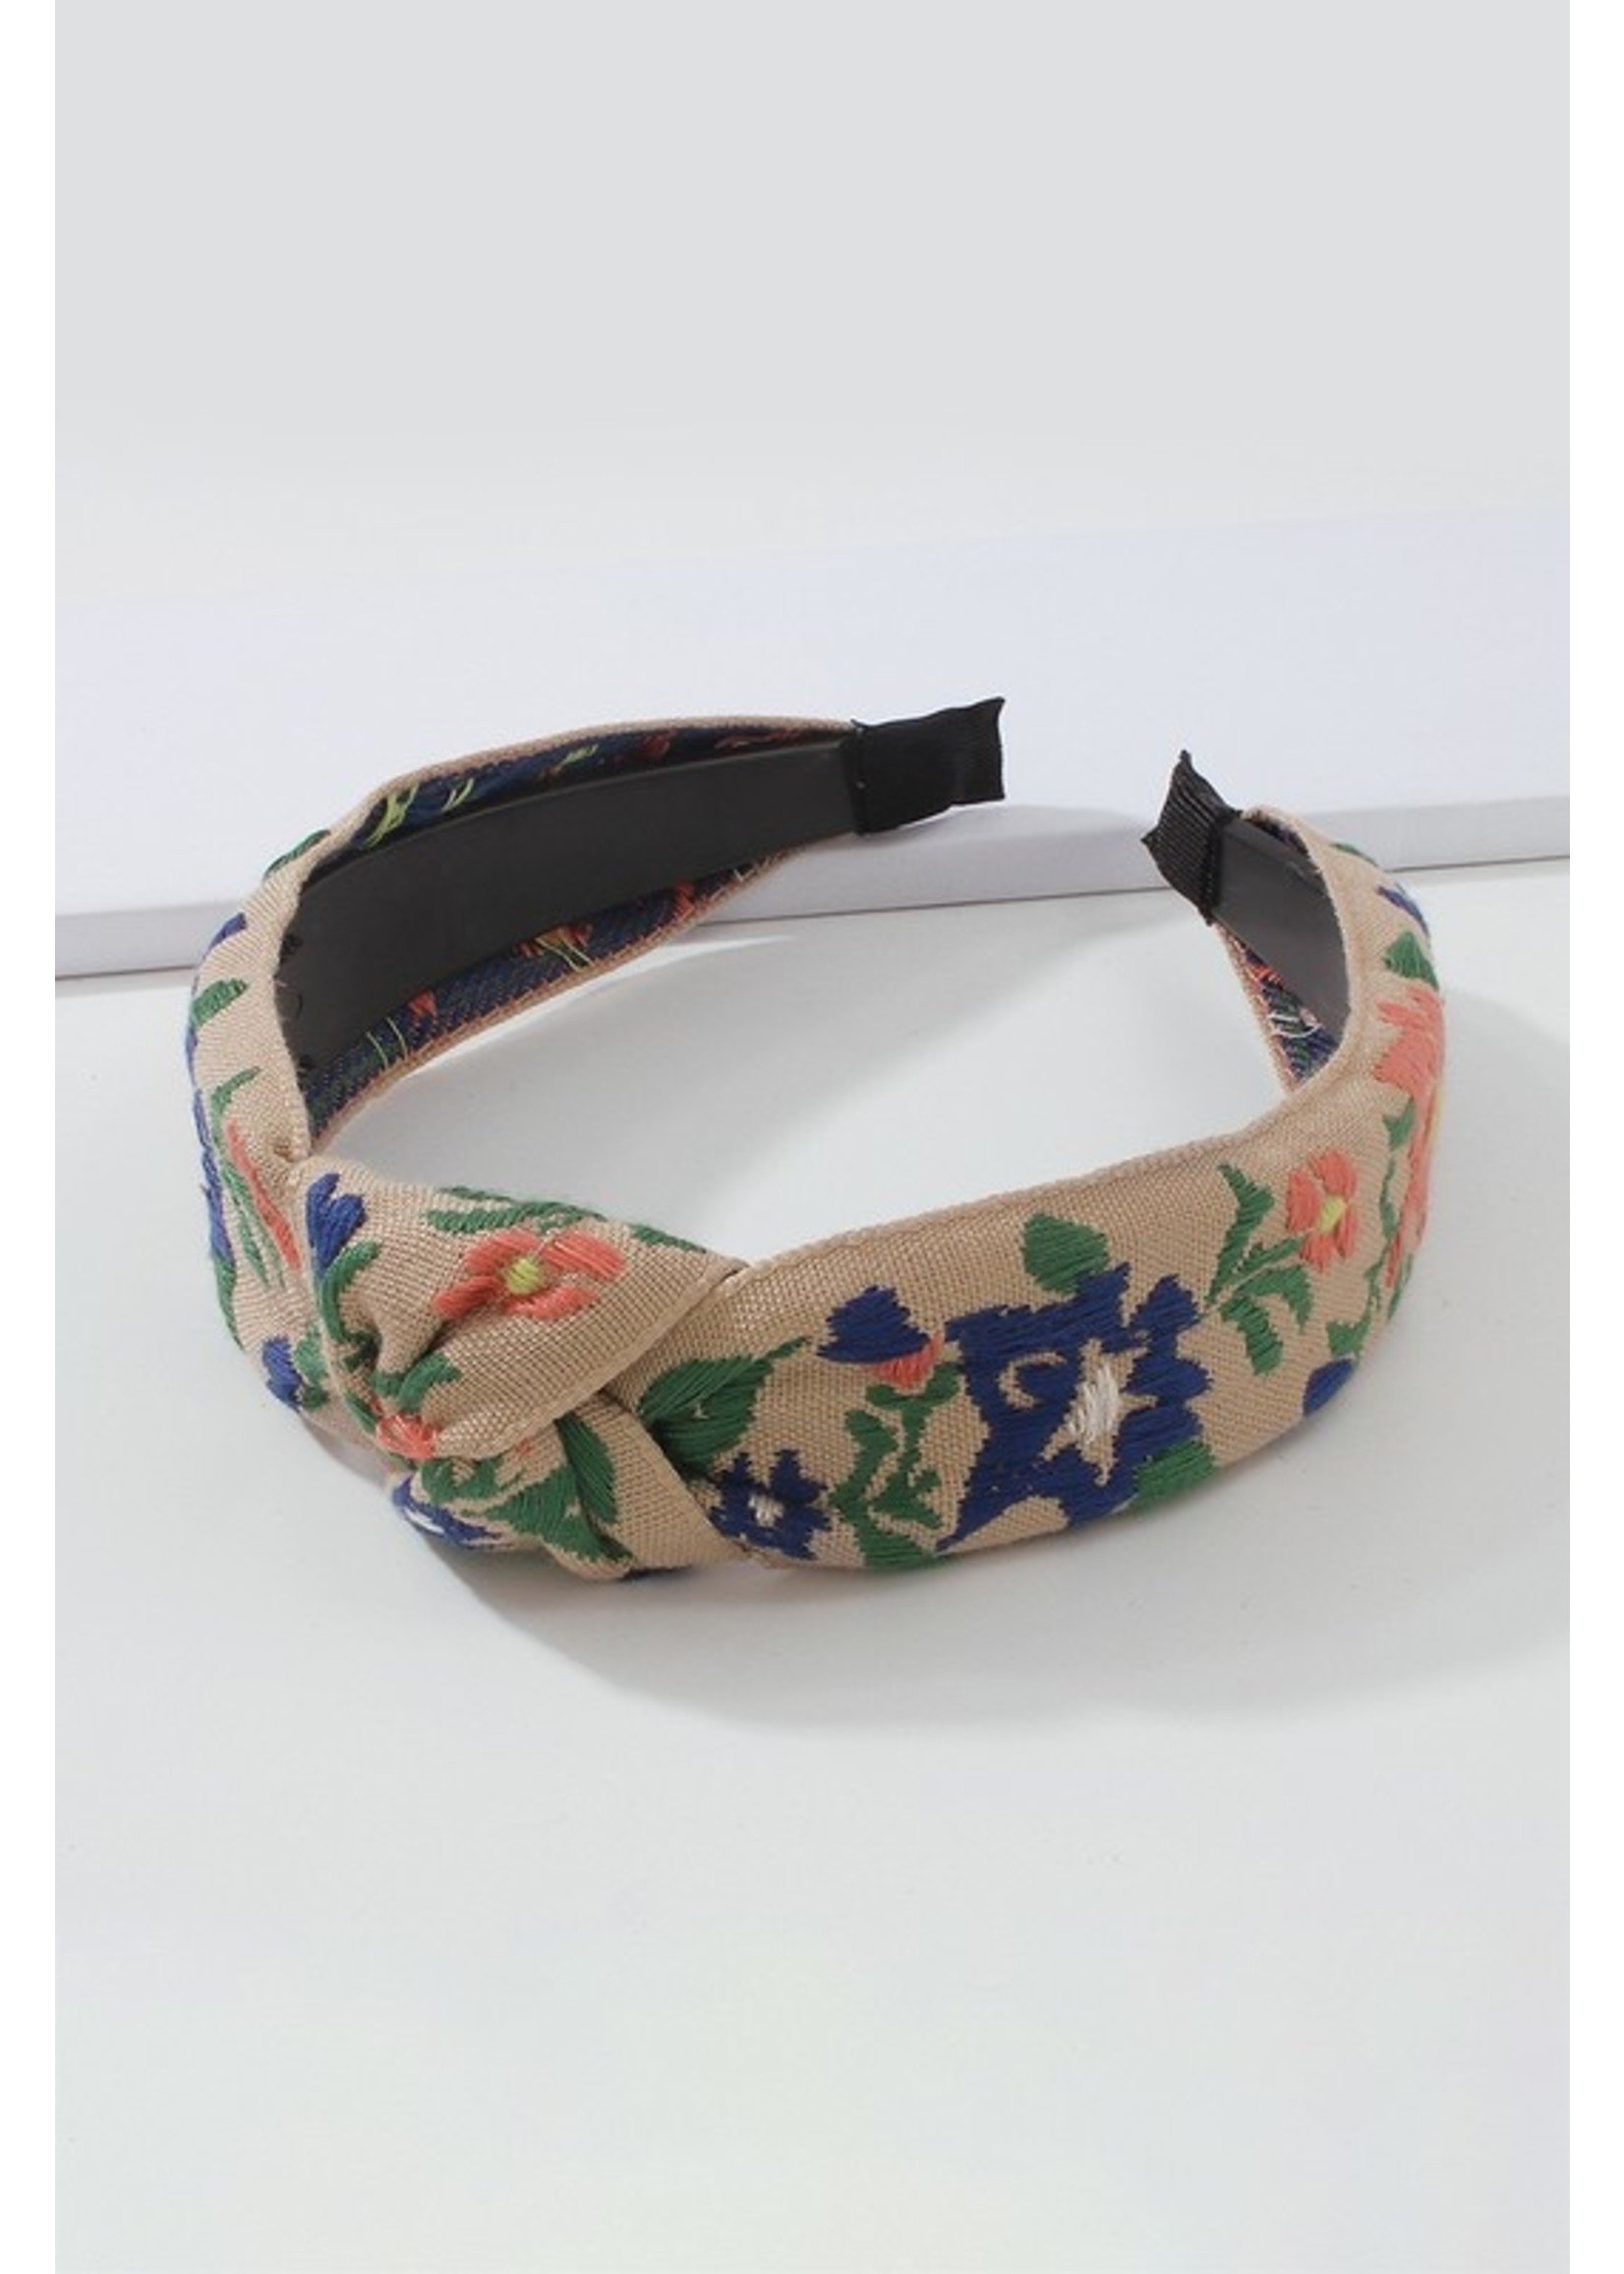 Ethnic Embroidered Flower/Leaf Headband